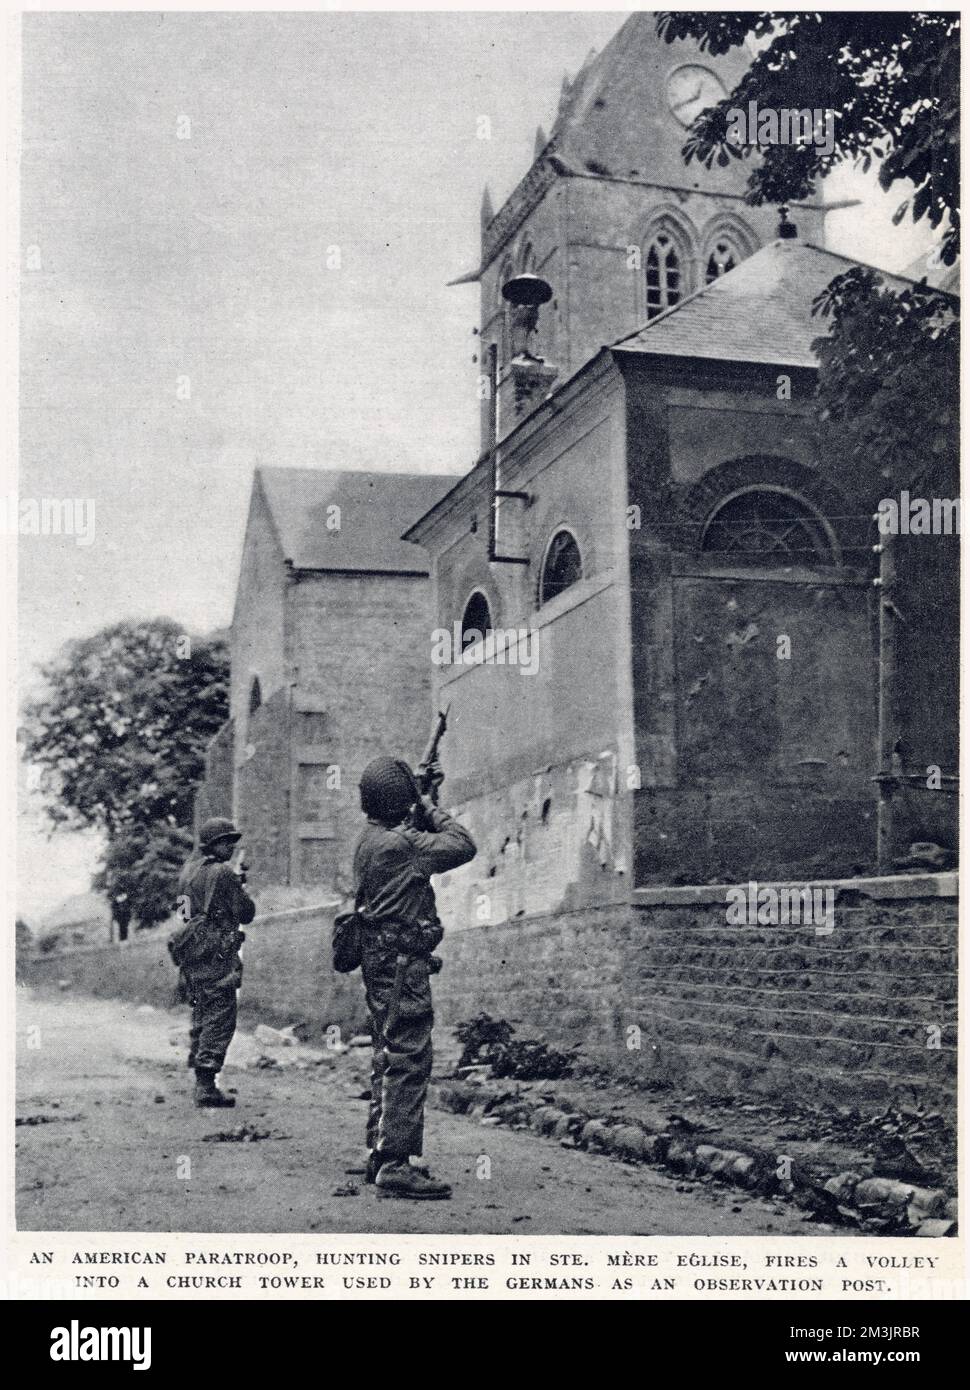 Amerikanische Fallschirmjäger, Scharfschützen in St. Nur Eglise, die eine Volleyfahrt in einen Kirchenturm abfeuert, der von deutschen Soldaten als Beobachtungsposten benutzt wird. Das Foto wurde in der Kampfzone der Normandie aufgenommen, kurz nach der Landung am D-Day am 6. Juni 1944. Stockfoto